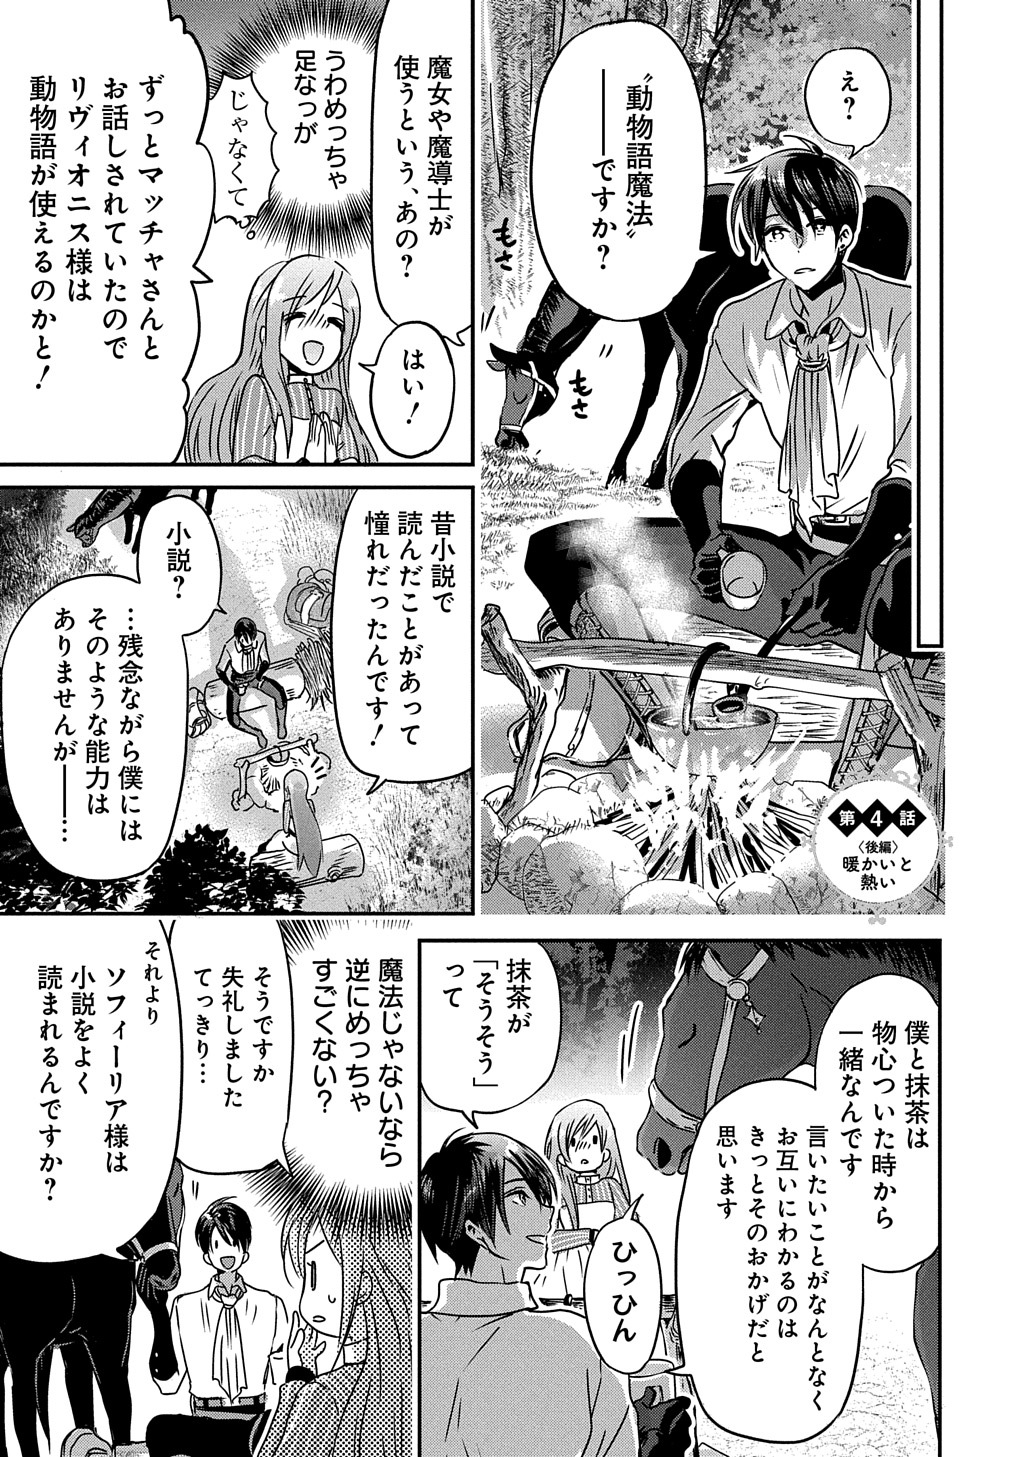 Konyakusha no Uwaki Genba wo Michatta no de Hajimari no Kane ga narimashita - Chapter 4.5 - Page 1